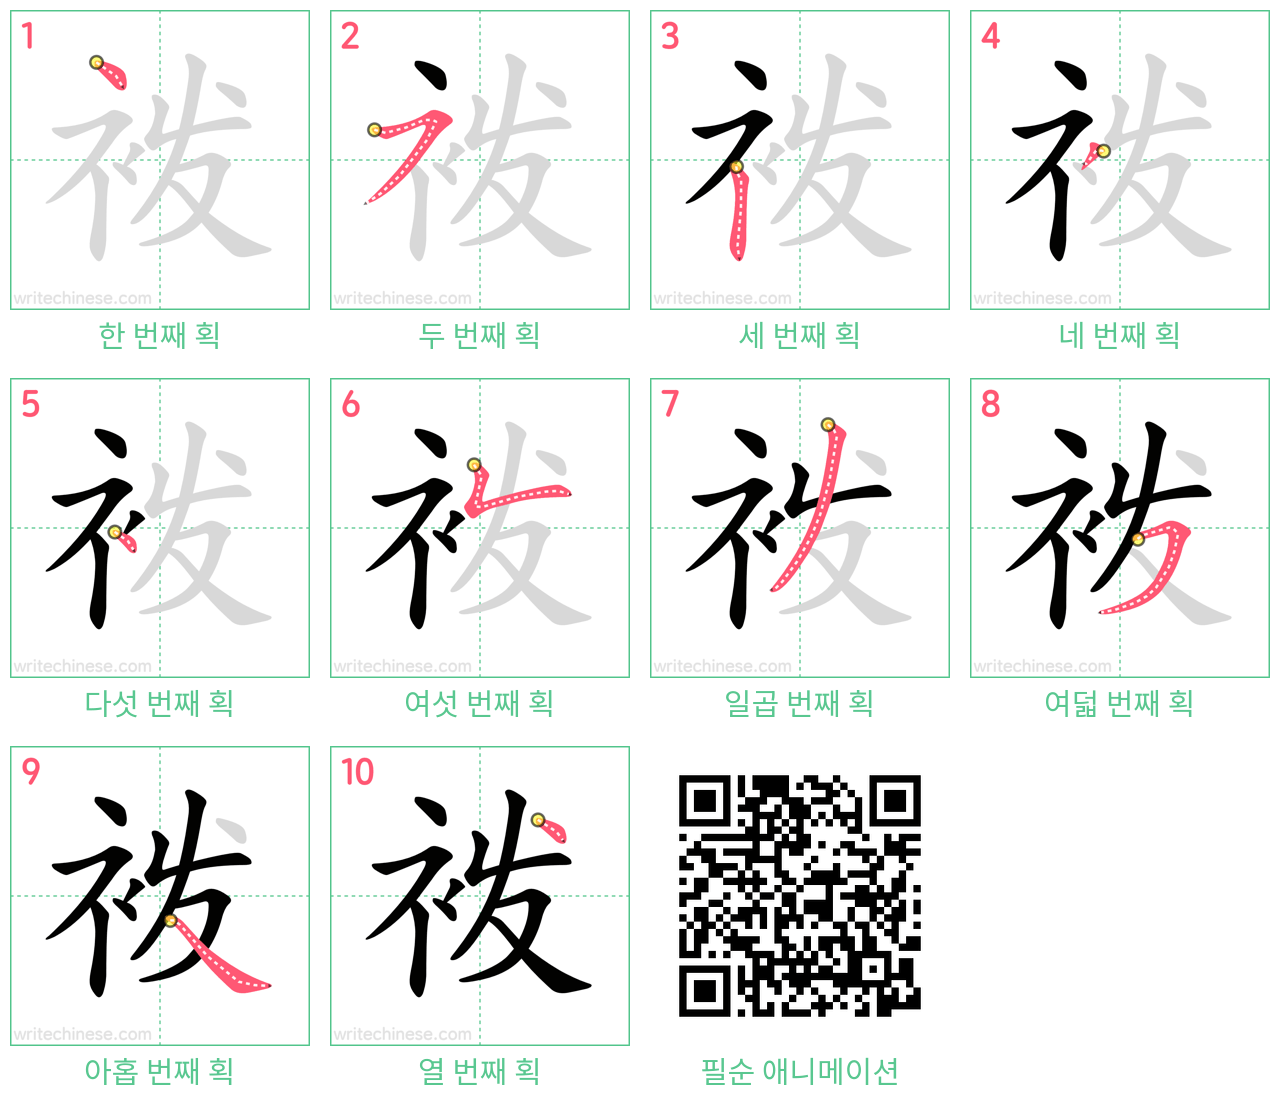 袯 step-by-step stroke order diagrams